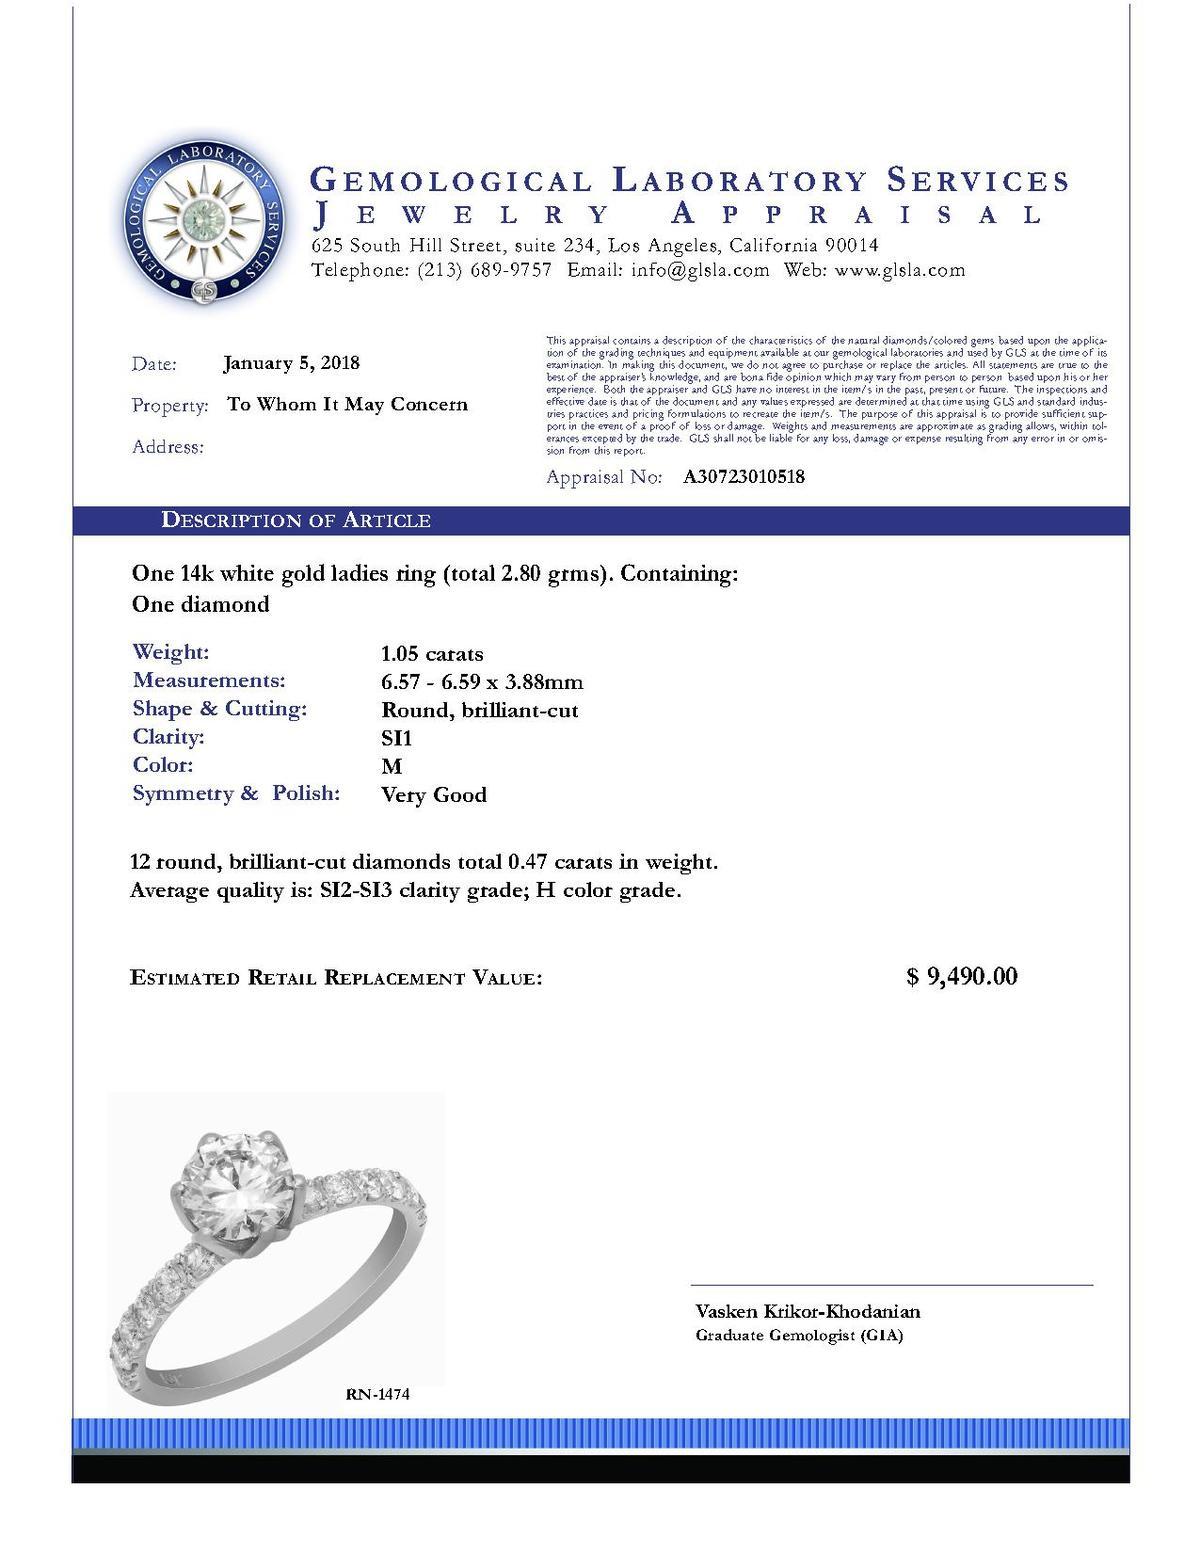 14k White Gold 1.05ct Diamond Ring